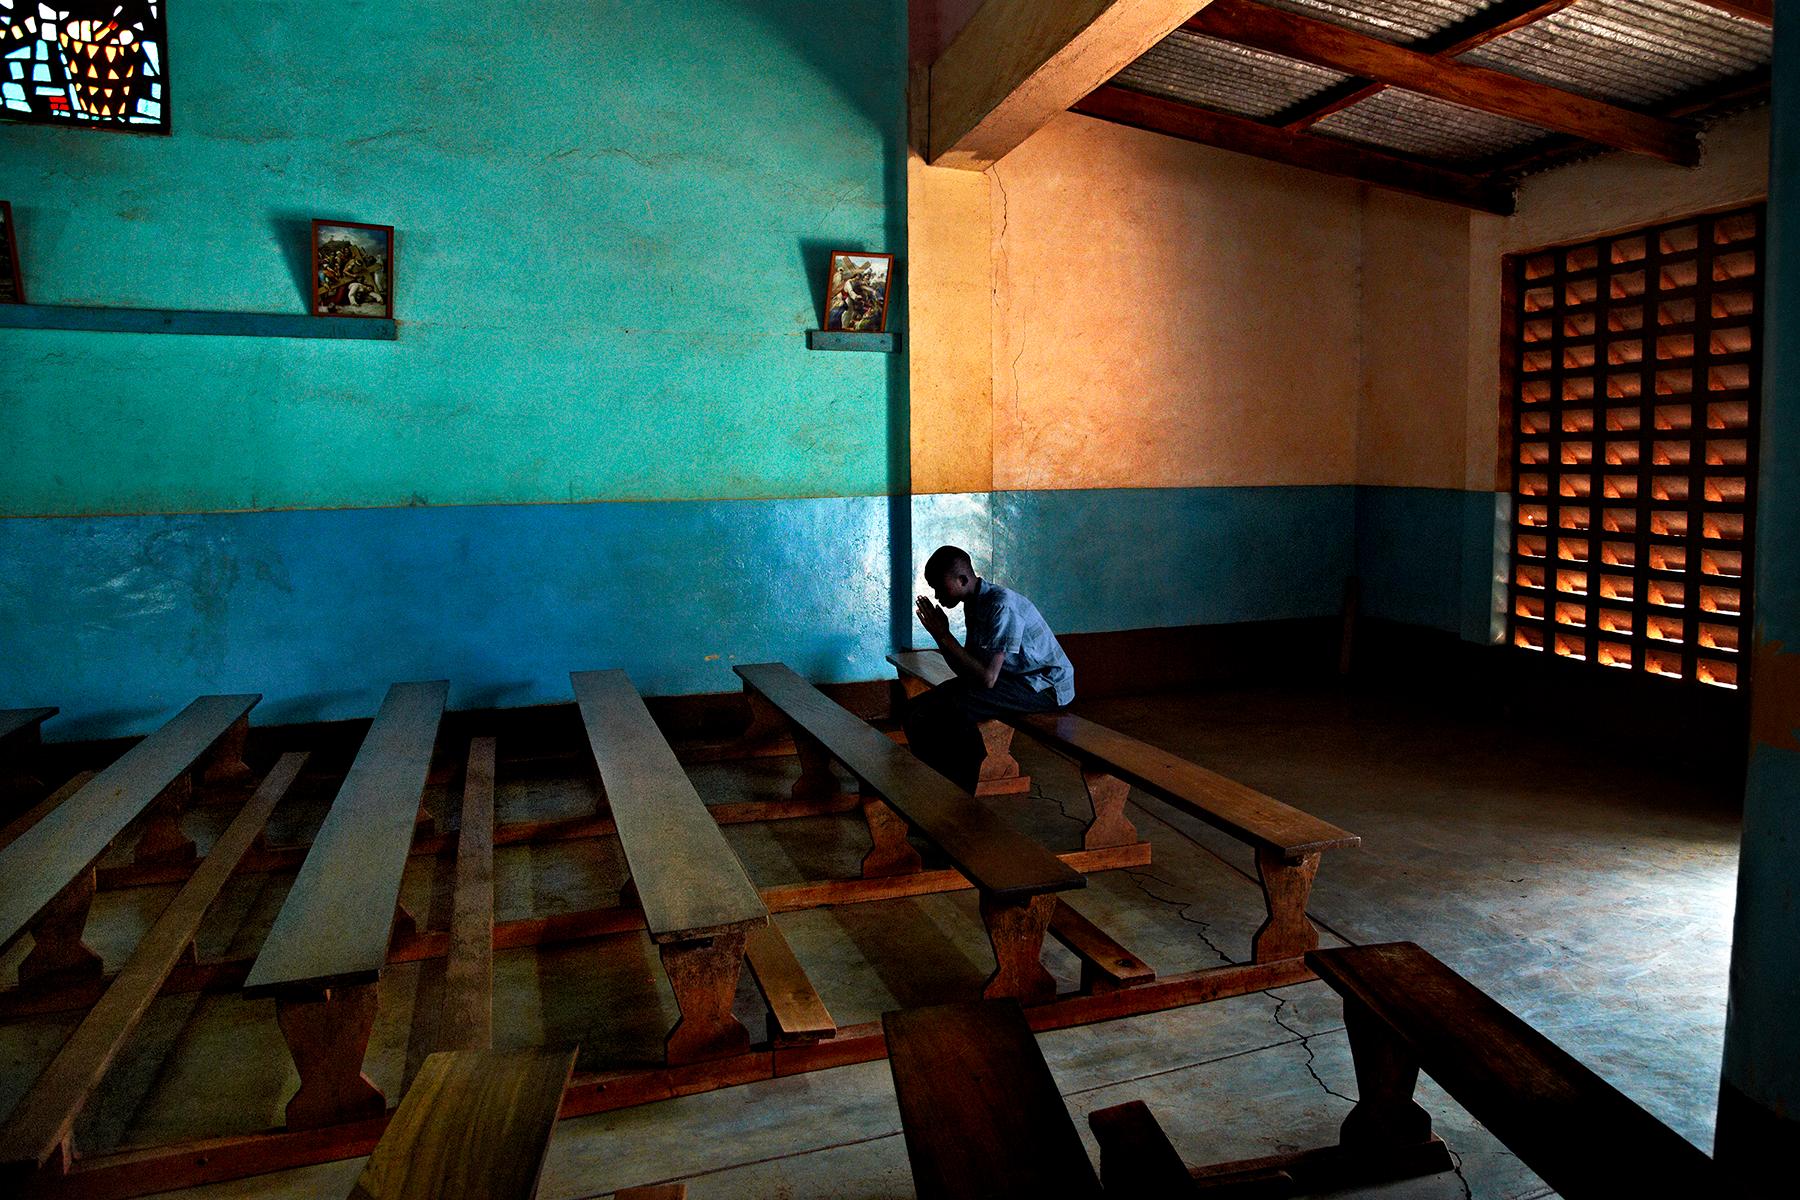 A coffee farmer prays alone in an empty church (Un cultivateur de café prie seul dans une église vide) de Steve McCurry représente un homme assis seul sur un banc, agenouillé, les mains en prière. La lumière pénètre par la porte ouverte, illuminant